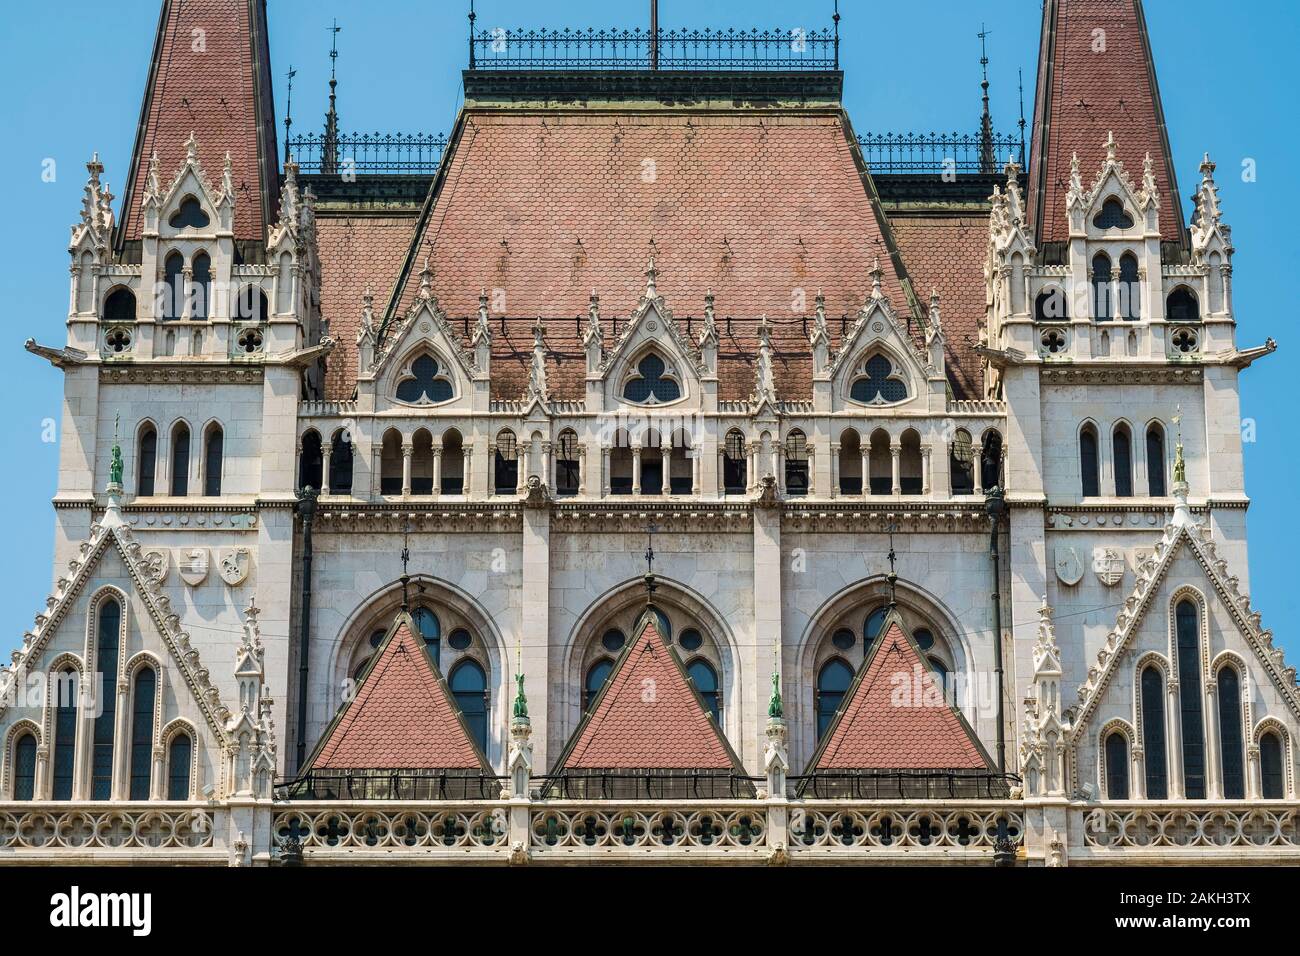 Ungarn, Budapest, UNESCO-Weltkulturerbe, Pest, das ungarische Parlament, großen neugotischen Stil Gebäude aus dem frühen 20. Jahrhundert, Sitz der Nationalversammlung von Ungarn. Stockfoto